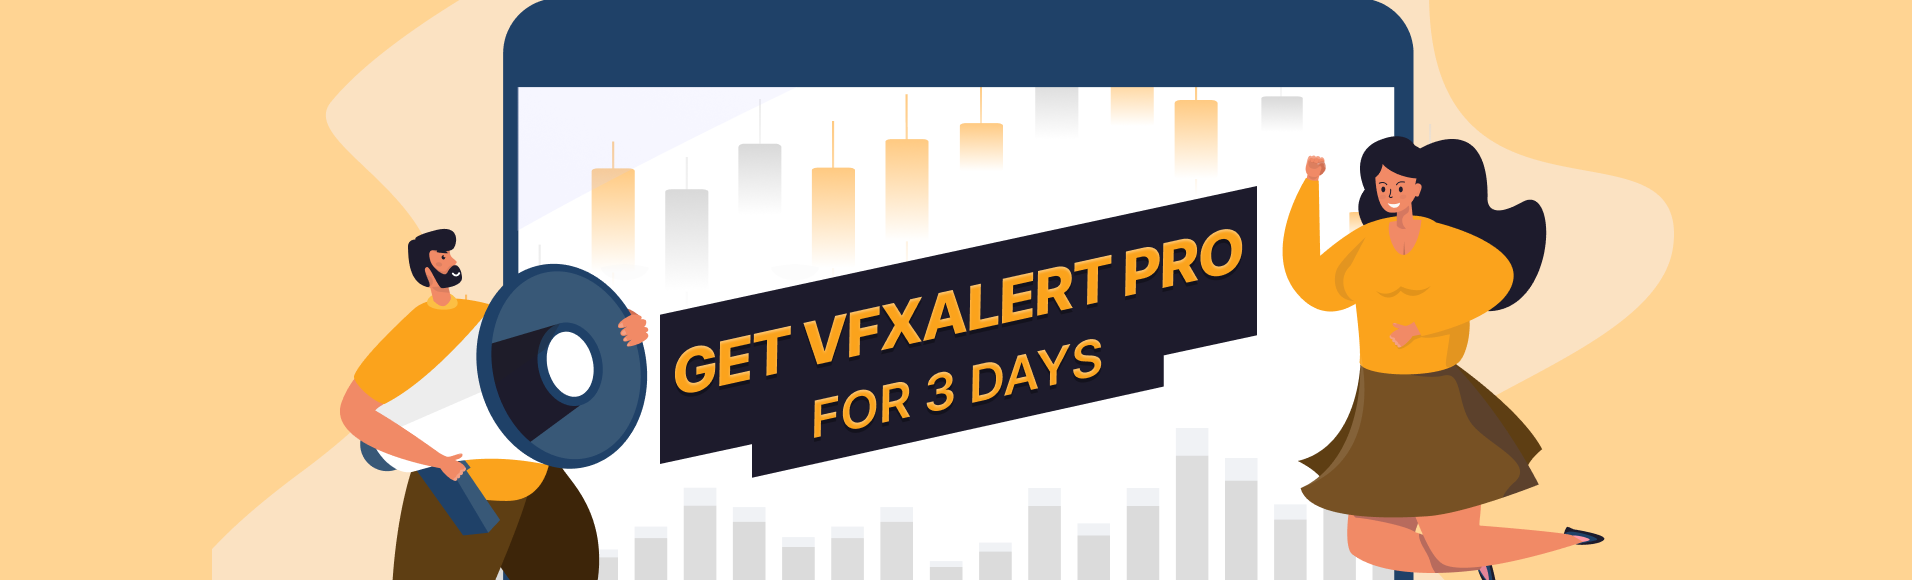 Termos e condições da promoção  vfxAlert PRO por 3 dias 